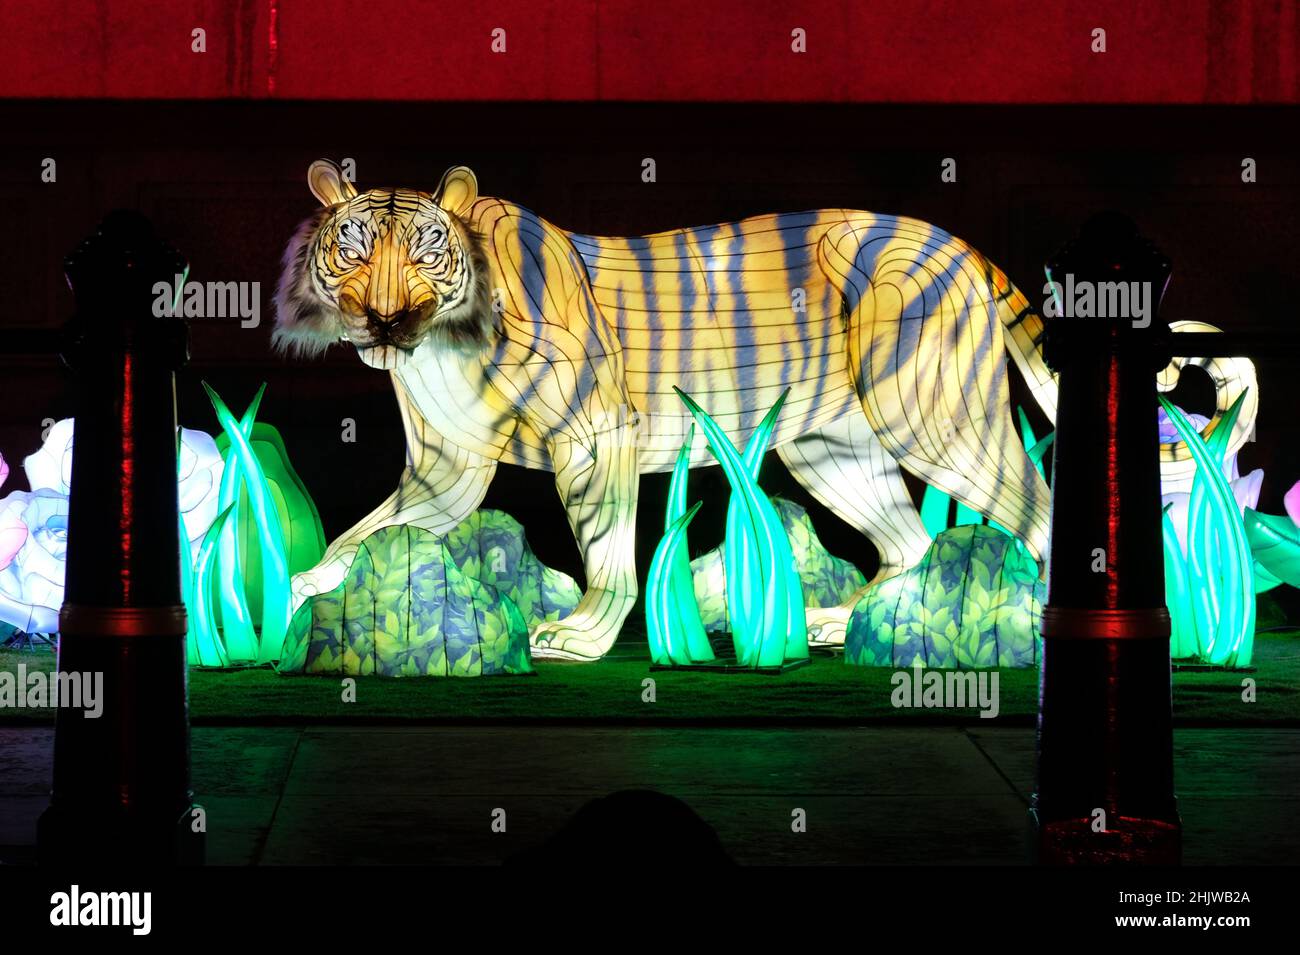 Londres, Royaume-Uni, 31st janvier 2022.Un tigre illuminé sur Trafalgar Square dans le cadre des célébrations du nouvel an chinois, qui tombe le 1st février et qui inaugure l'année du tigre.Une danse du lion et du dragon a été réalisée principalement pour les dignitaires et les officiels, car les célébrations publiques prévues ont été réduites cette année en raison des problèmes de temps de planification liés à la pandémie de Covid.Crédit : onzième heure Photographie/Alamy Live News Banque D'Images